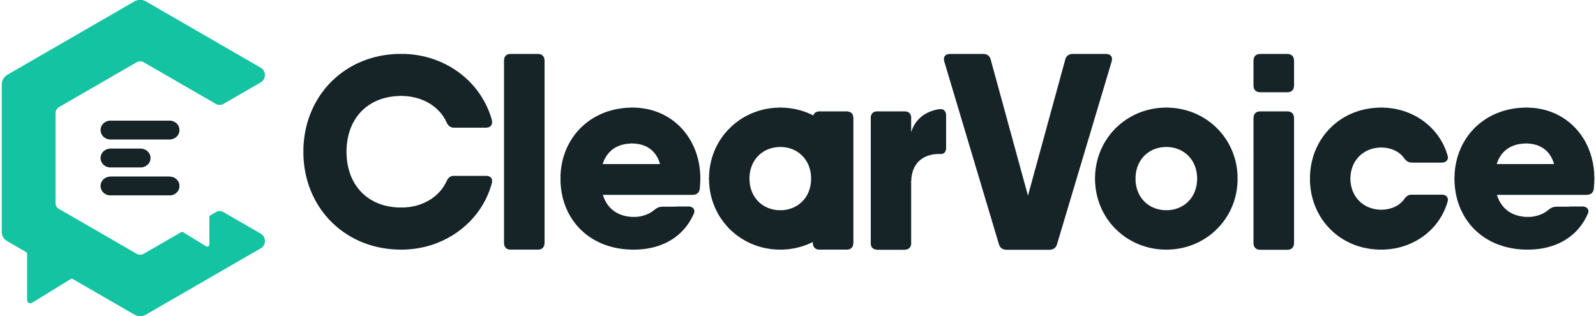 clearvoice-logo-800x158@2x